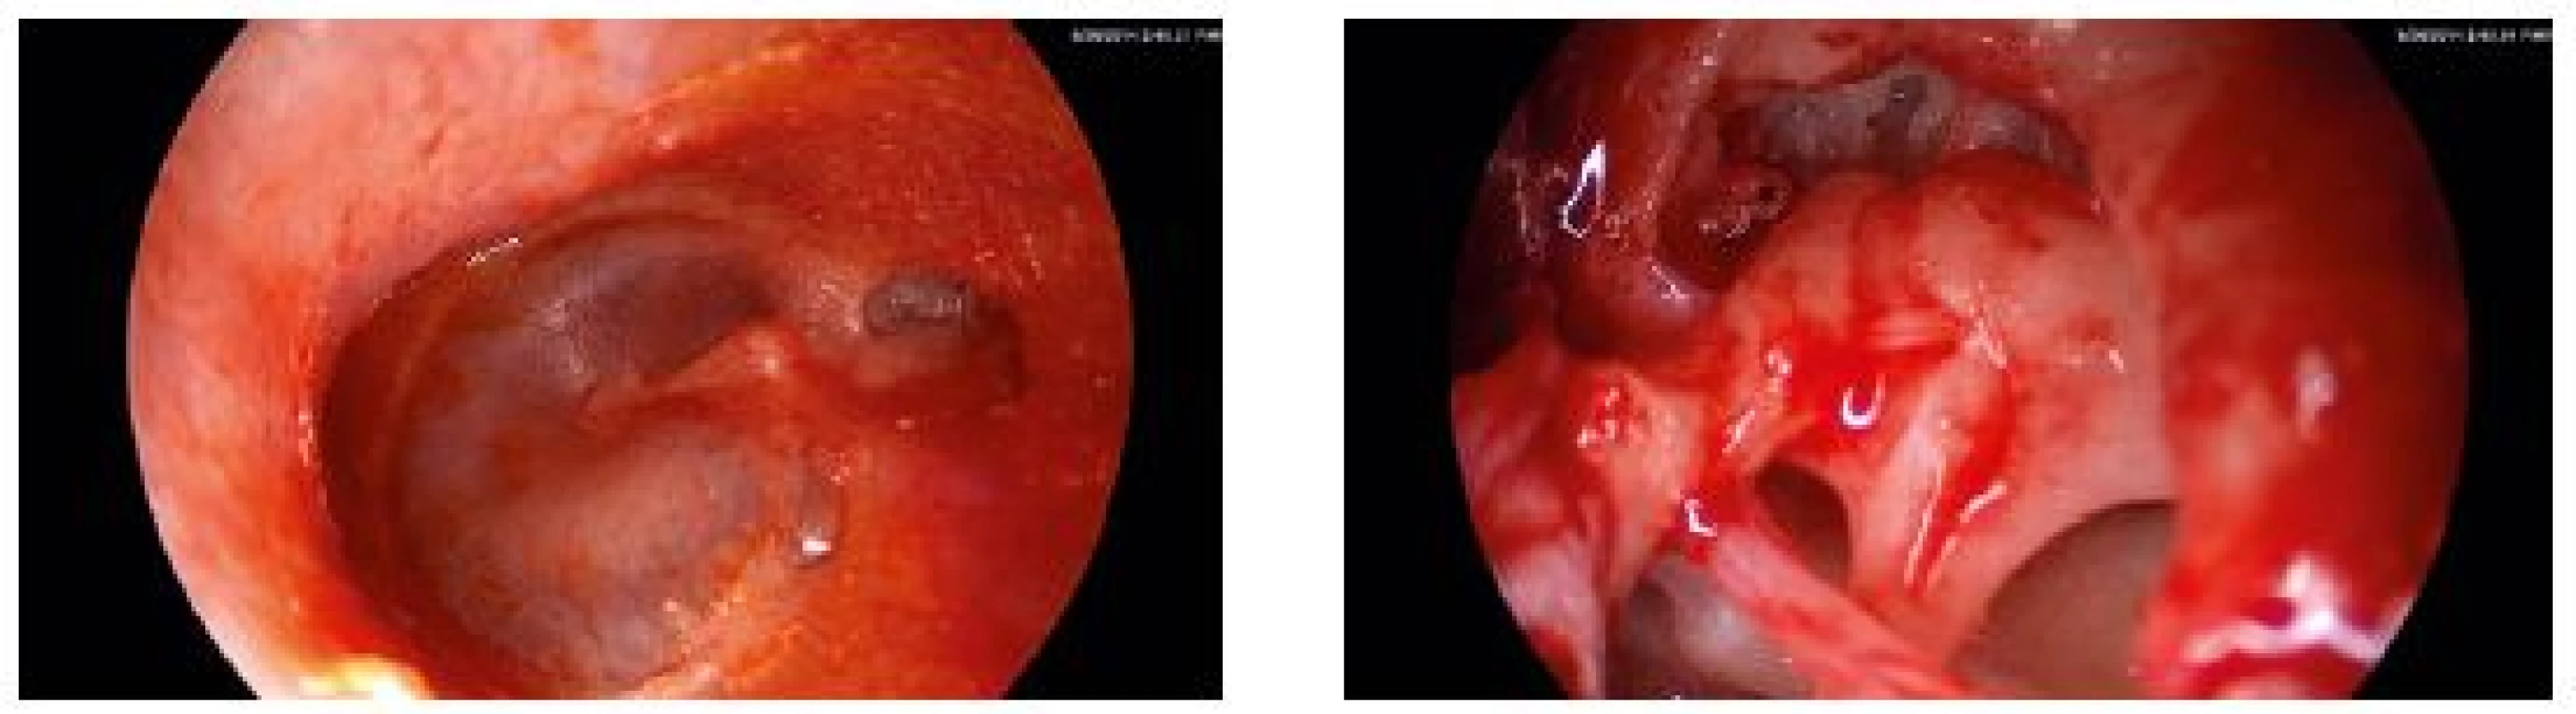 Pacient SC, 25 let, levé ucho. Endoskopicky zjevný zbytek stěny retrakční kapsy 3. stupně dle Tose v protympanu (*).